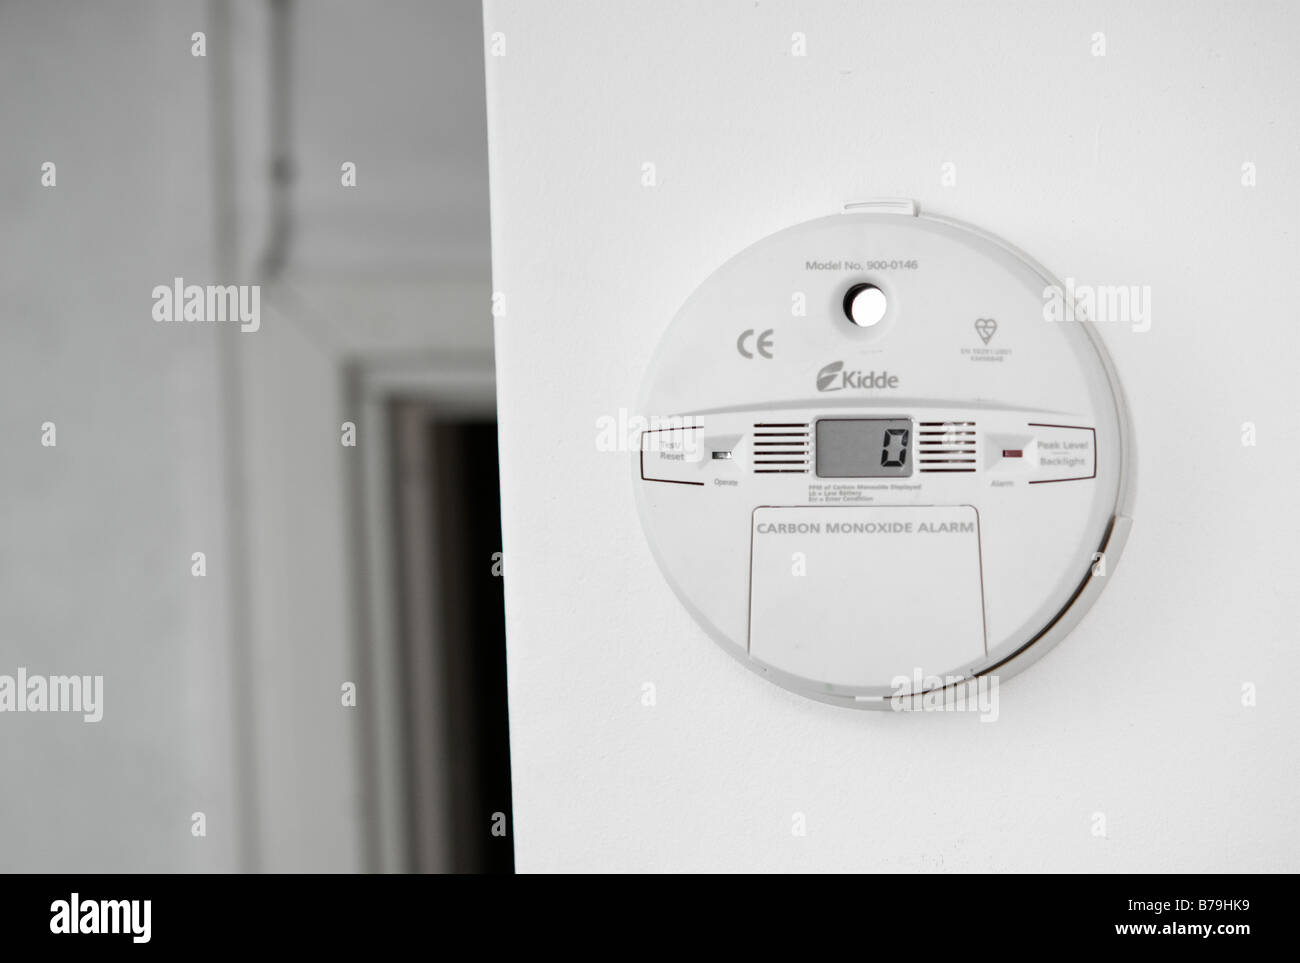 Digital carbon monoxide detector Stock Photo